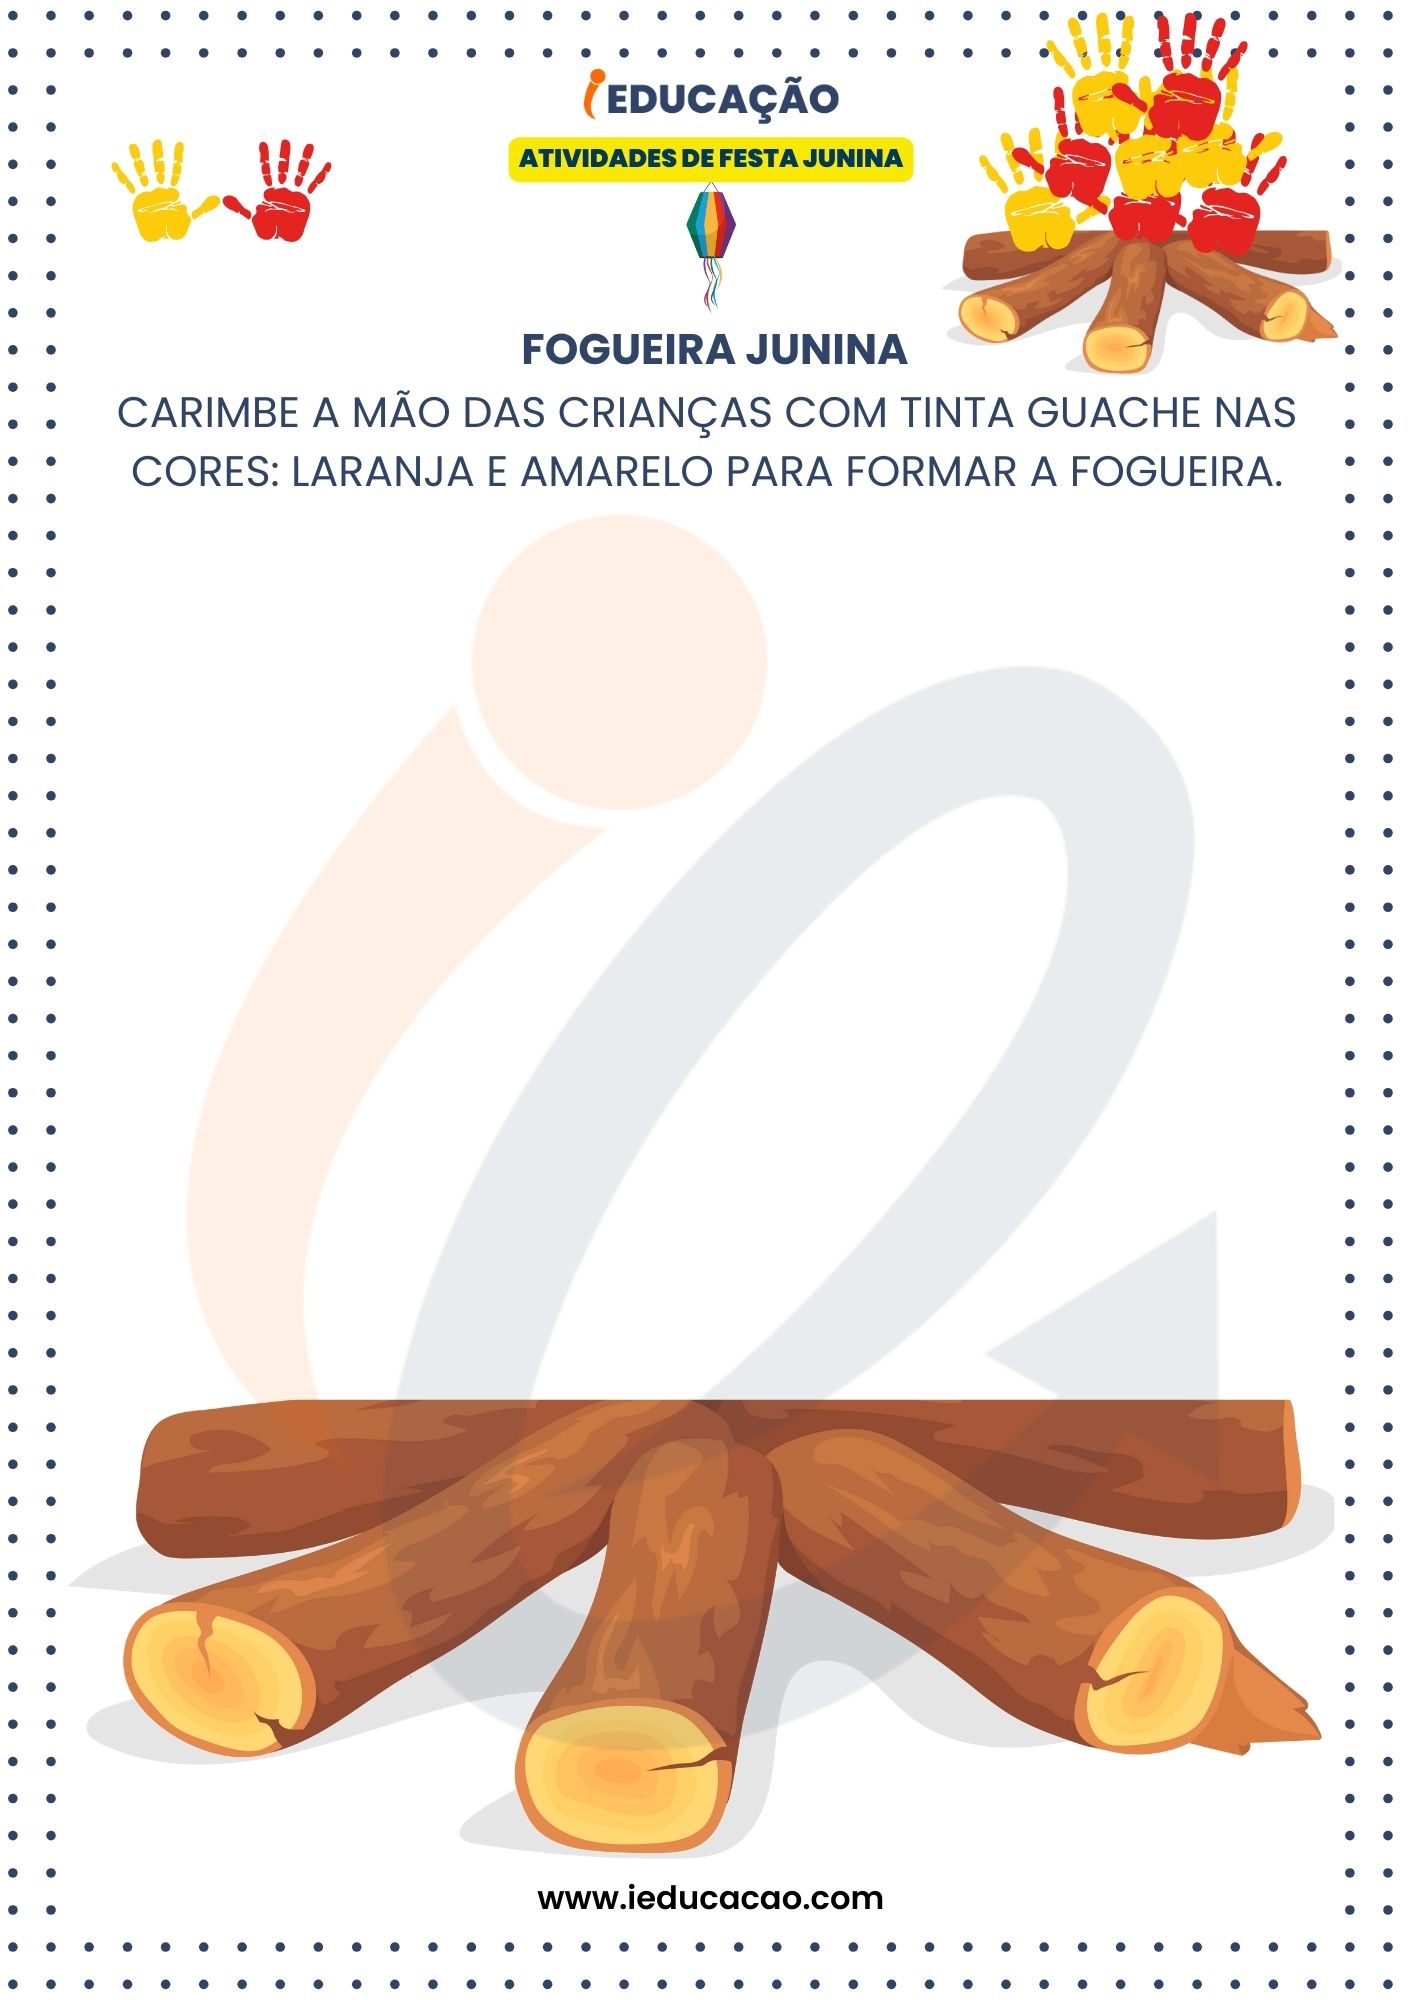 Atividades de Festa Junina para Educação Infantil- Atividade de Carimbar Mãos- Fogueira Junina